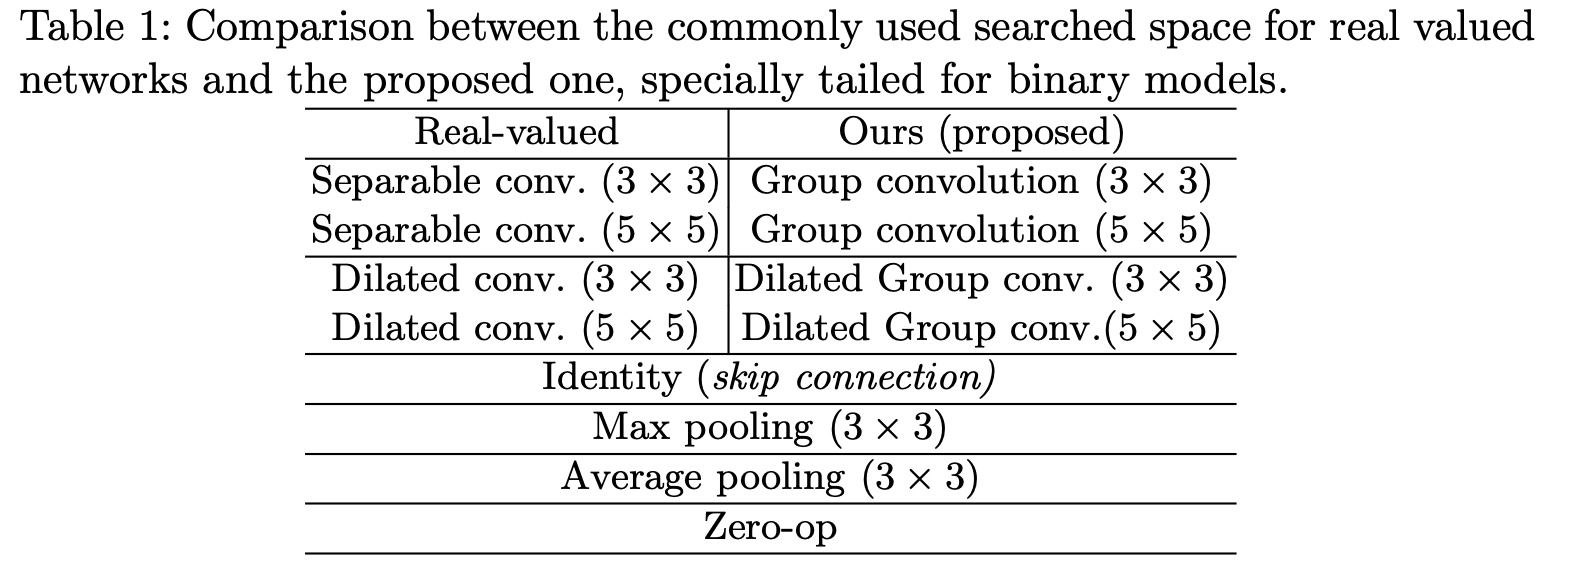 二值神经网络搜索空间 vs. 标准 DARTS 搜索空间